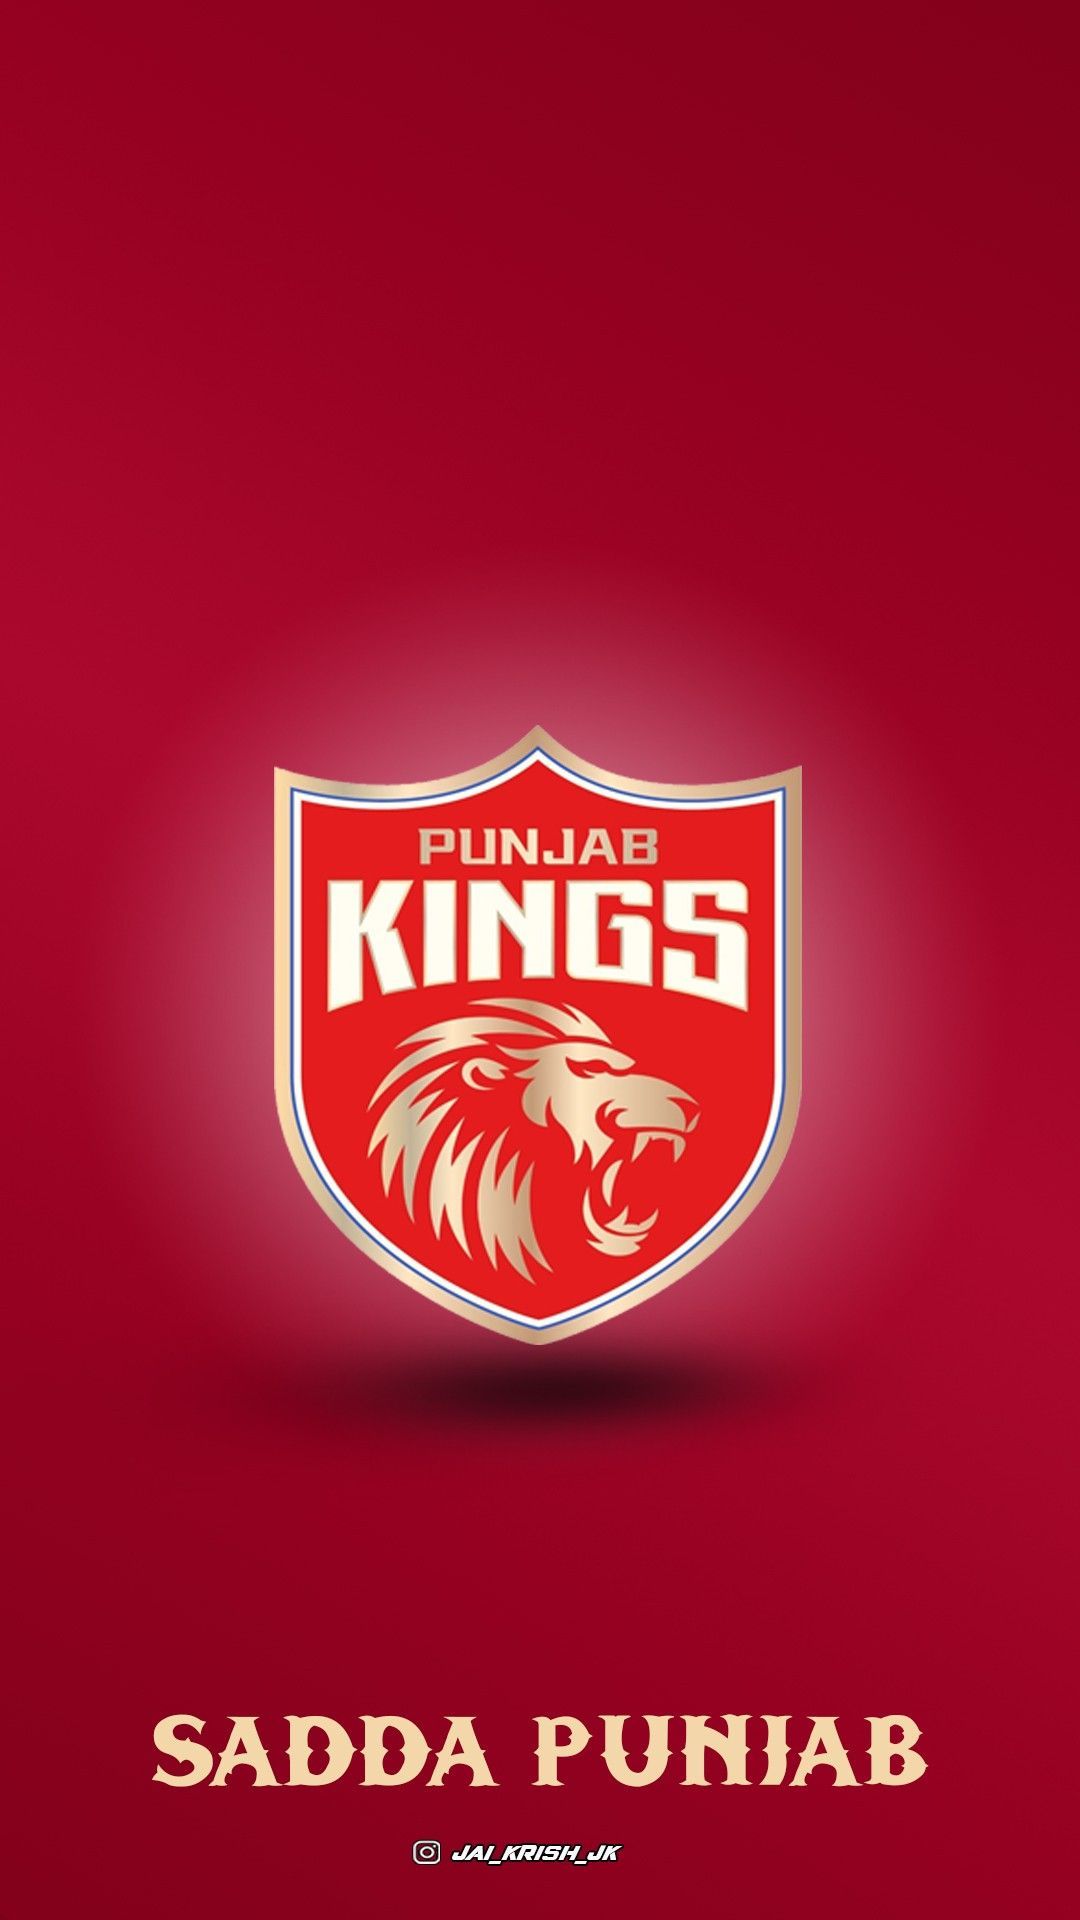 Punjab Kings Mobile Wallpaper IPL 2021. King mobile, Punjab, Mobile wallpaper